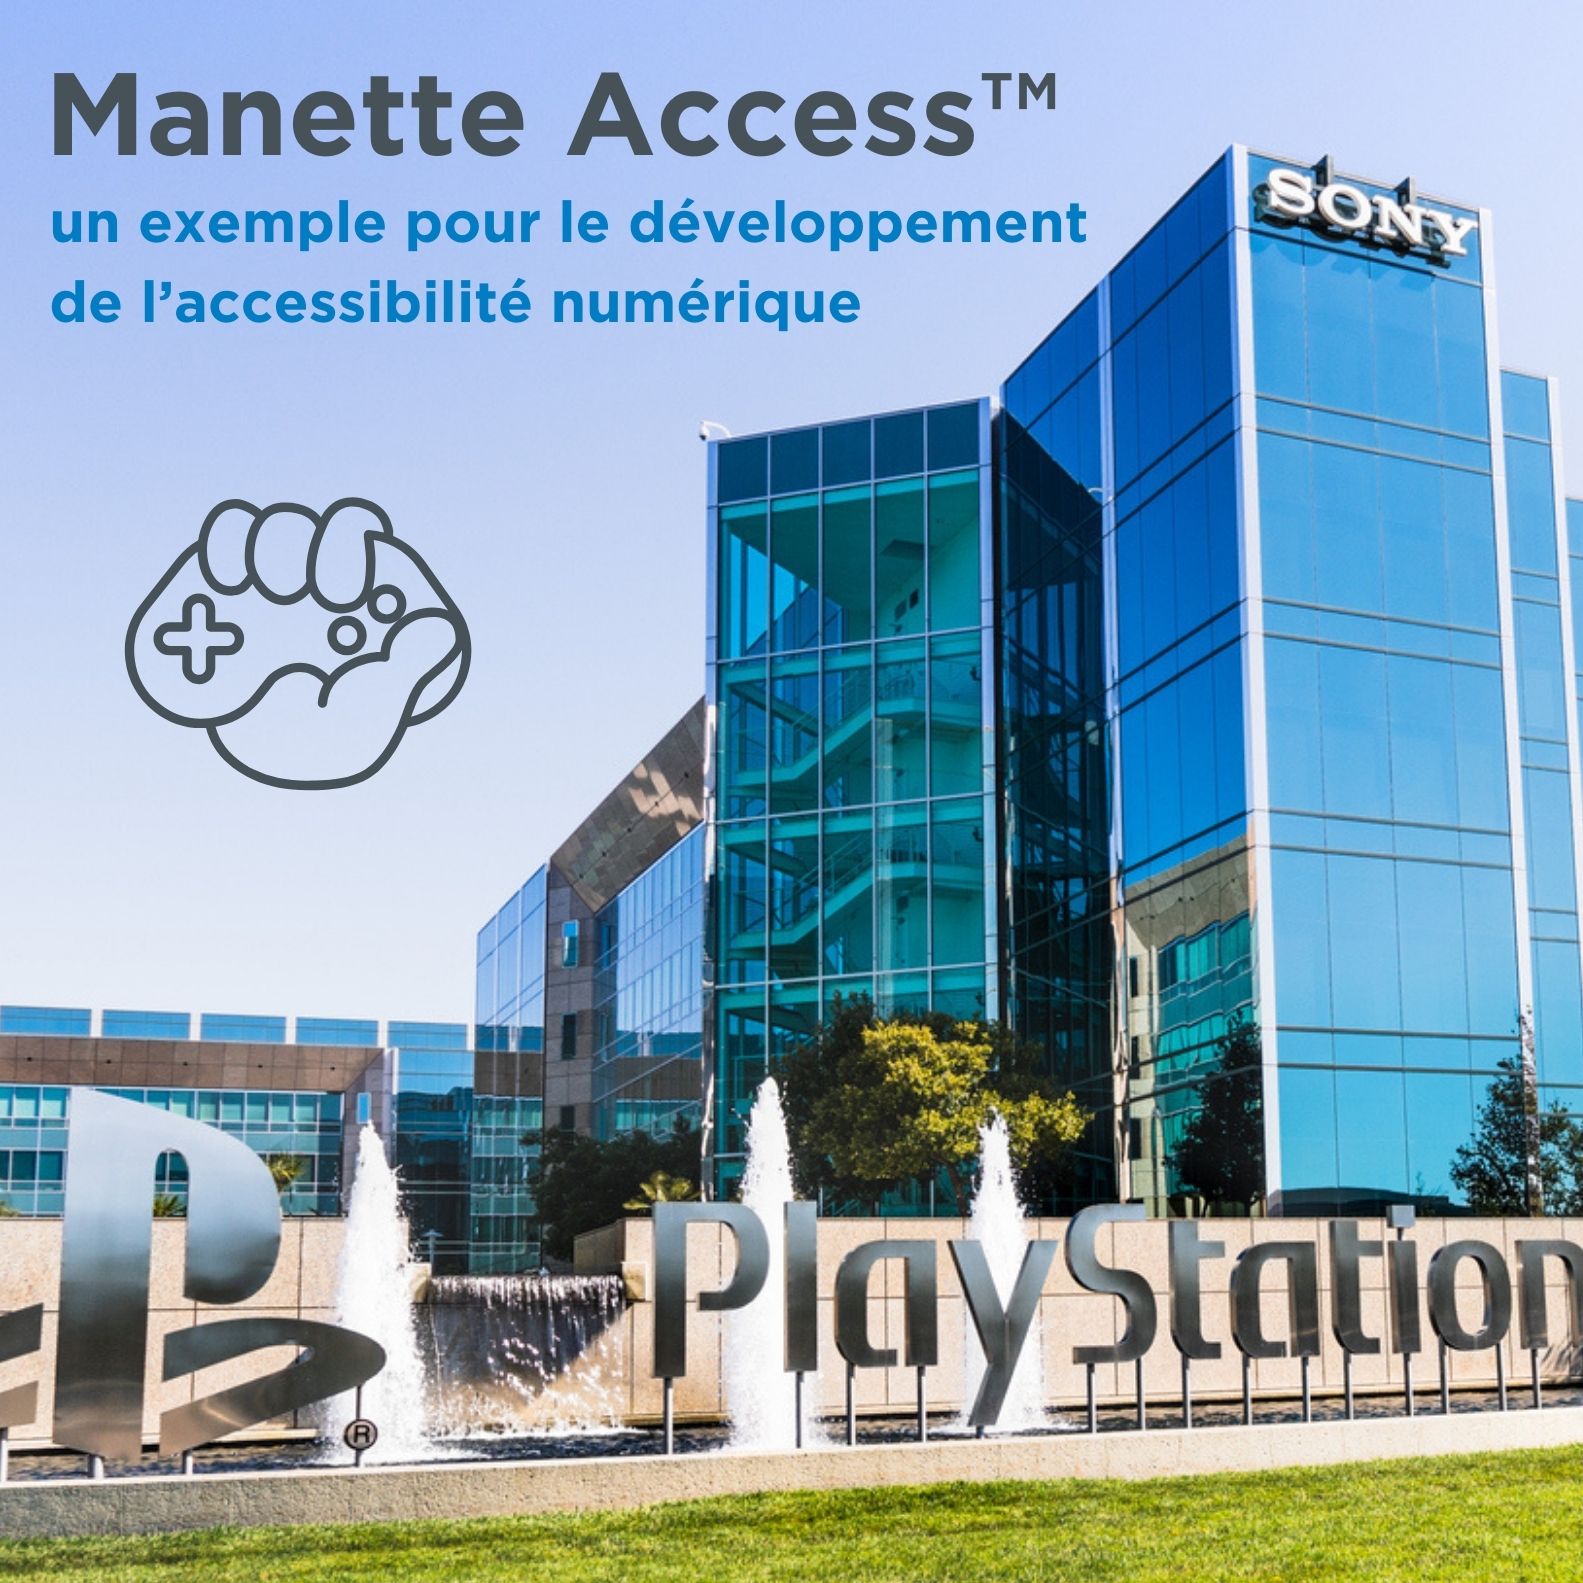 Sony Manette Access, un exemple pour le développement de l'accessibilité numérique